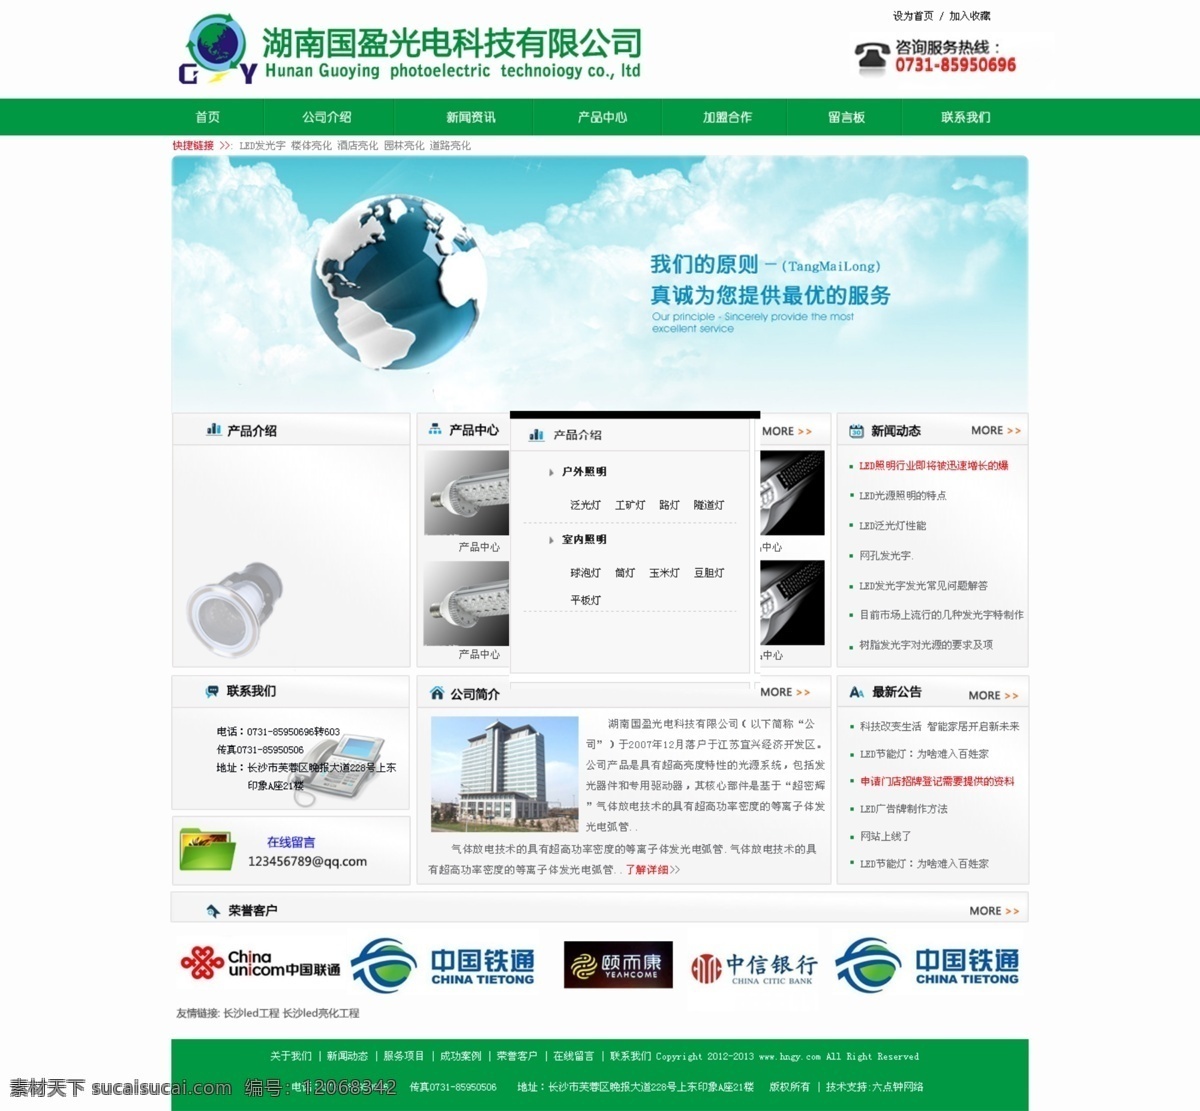 公司网站 科技公司 网页模板 源文件 中文模板 中文网站 绿色 科技 公司 网站 模板下载 模版 网站设计 科技有限公司 网页素材